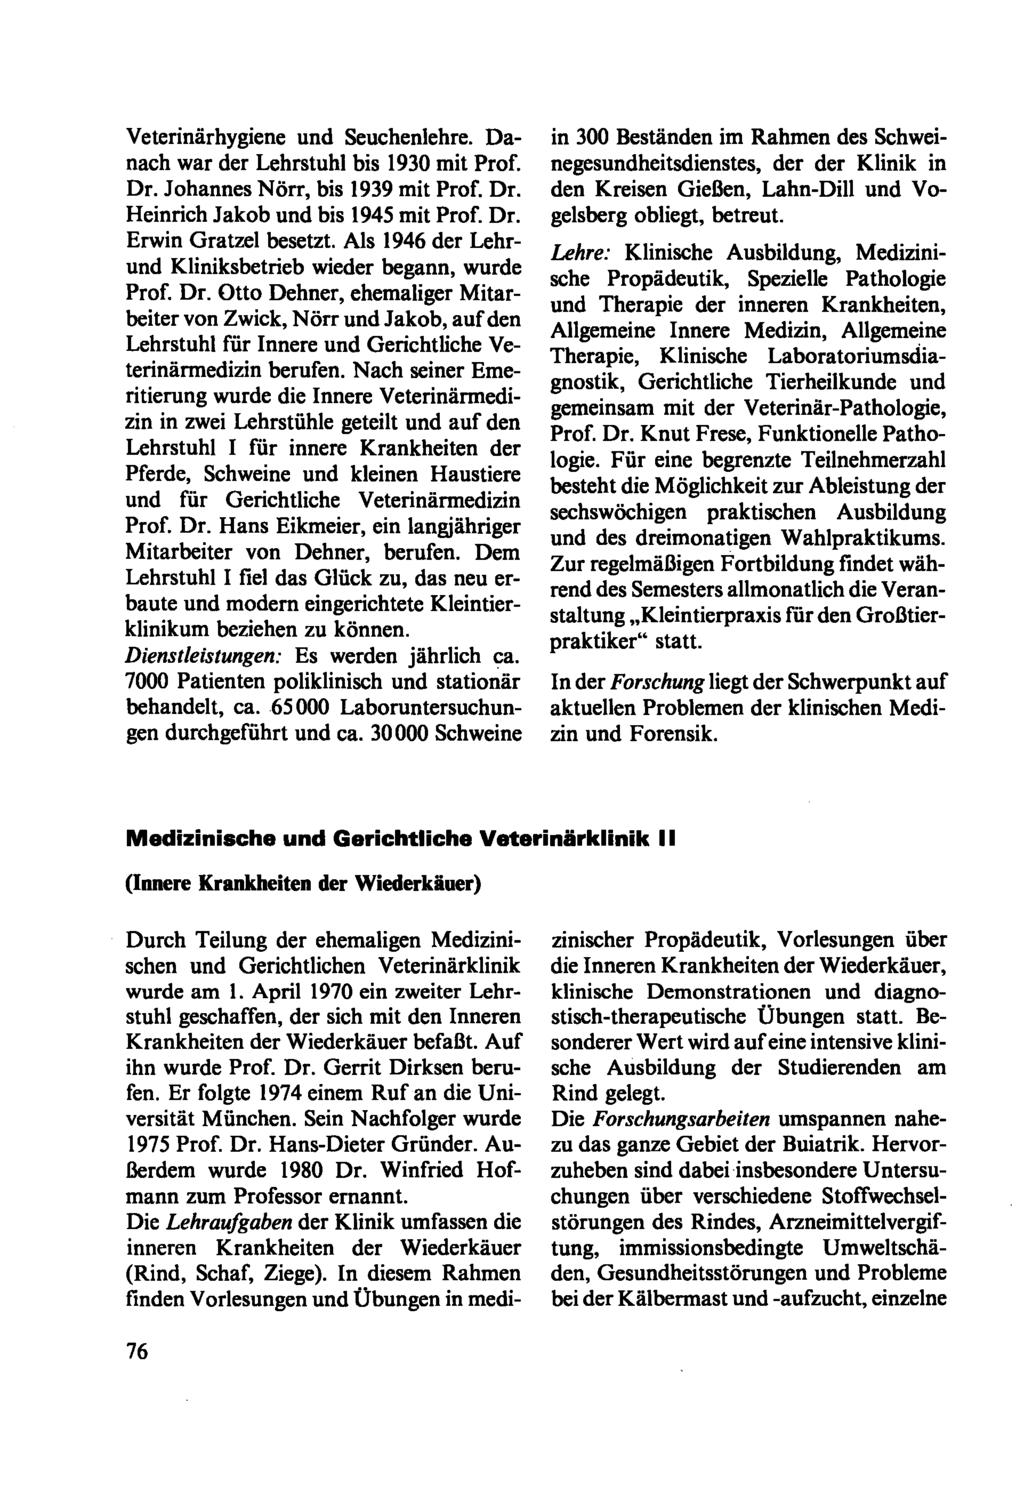 Veterinärhygiene und Seuchenlehre. Danach war der Lehrstuhl bis 1930 mit Prof. Dr. Johannes Nörr, bis 1939 mit Prof. Dr. Heinrich Jakob und bis 1945 mit Prof. Dr. Erwin Gratzel besetzt.